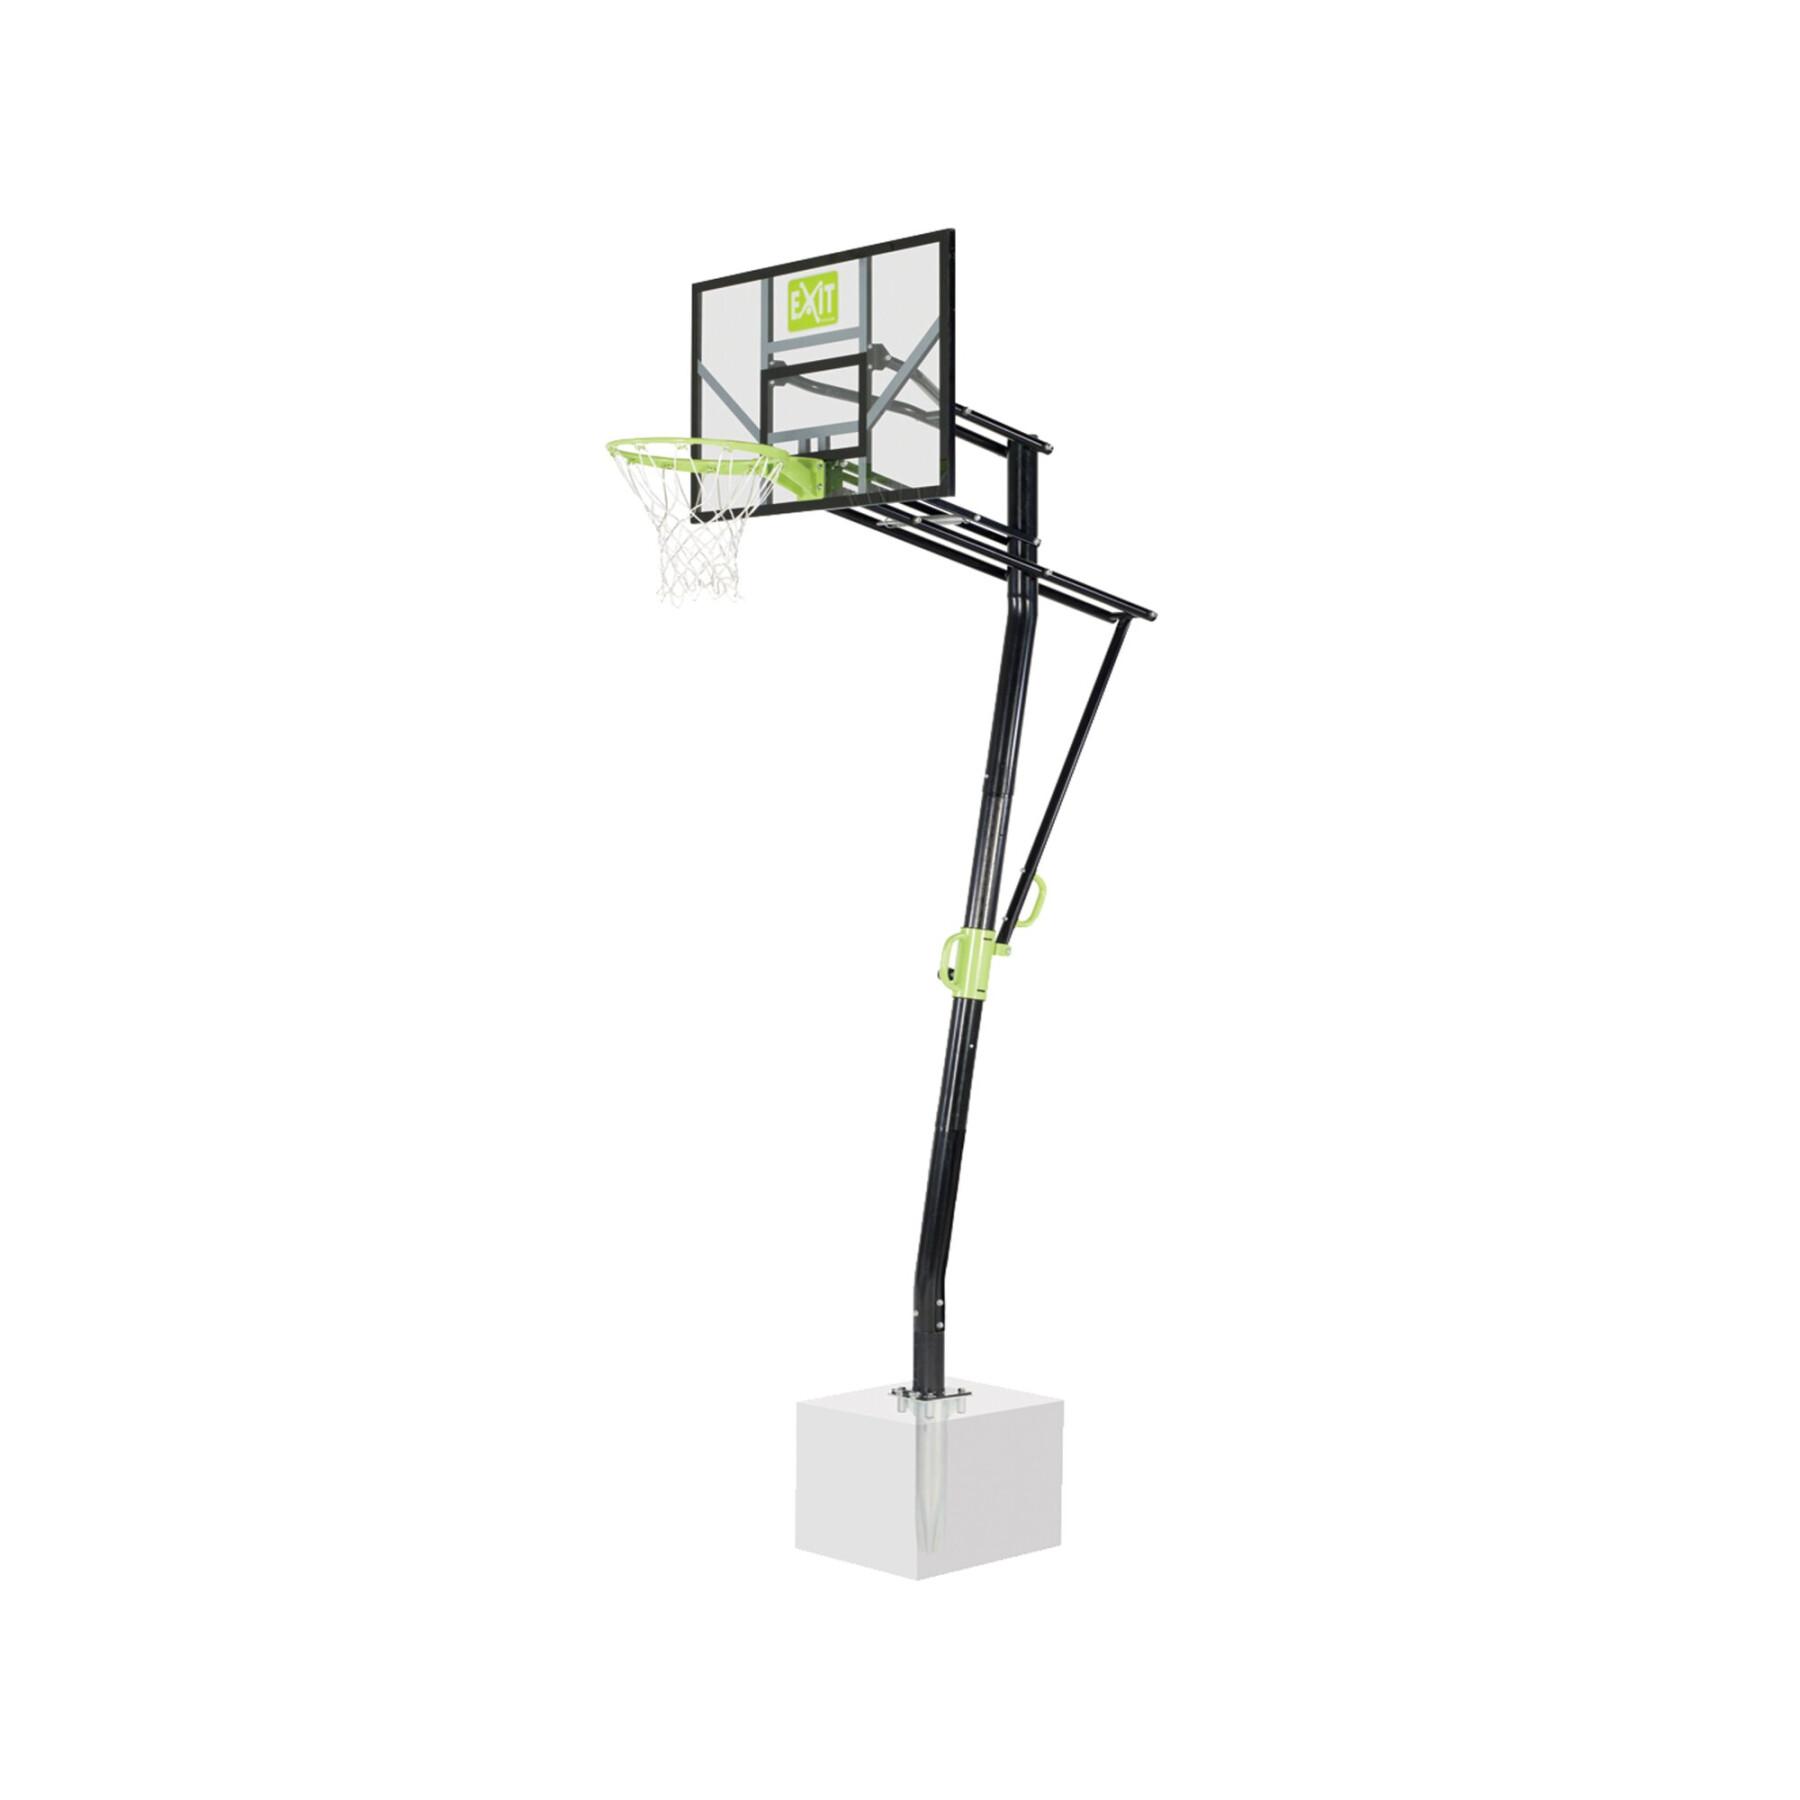 Basketkorg för golvmontering Exit Toys Galaxy